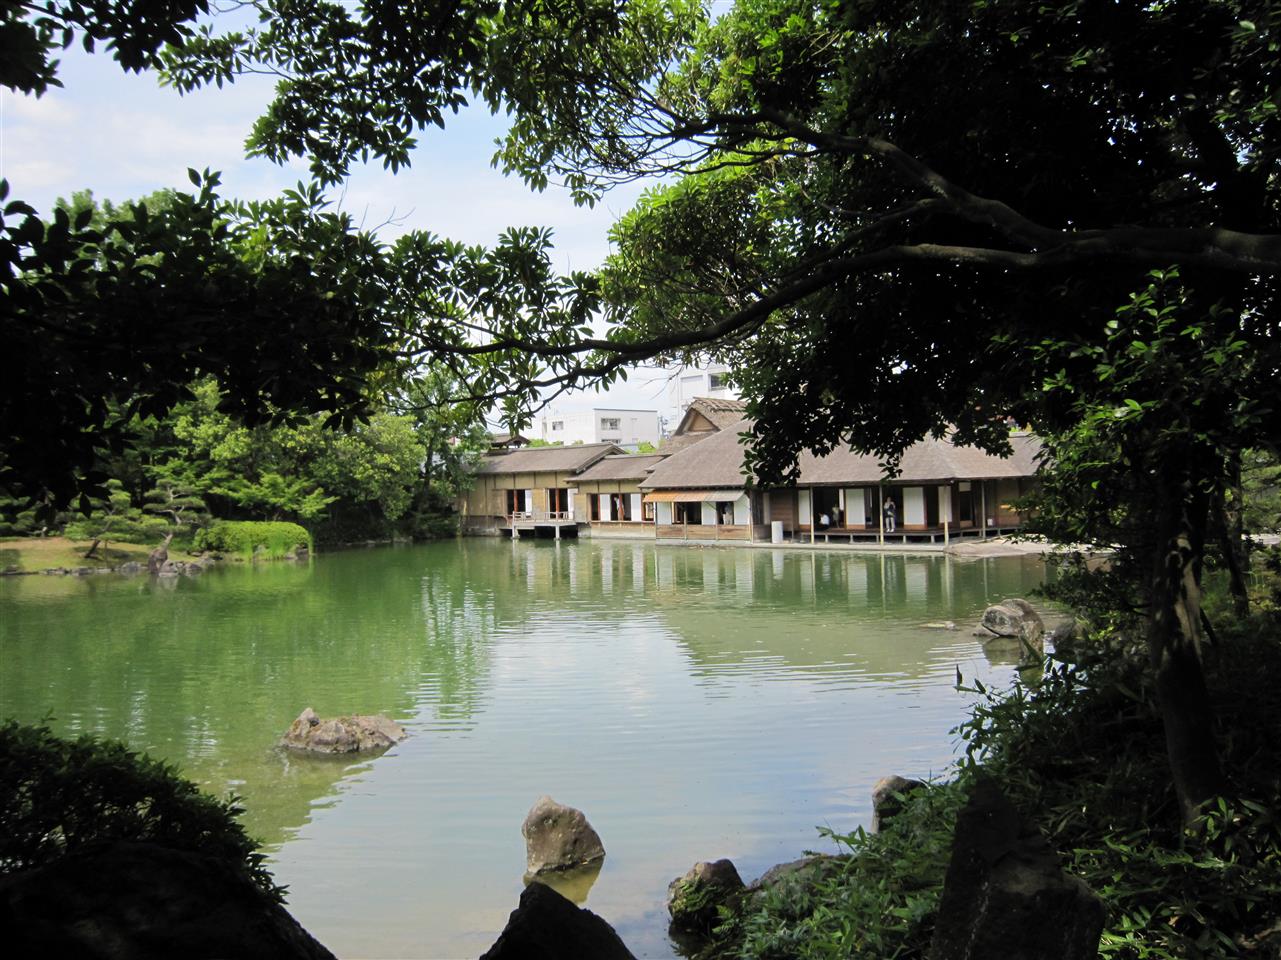 福井越前松平大名が愛した庭園、養浩館（ようこうかん）Yokokan - Villa Daimyo loved in Edo era